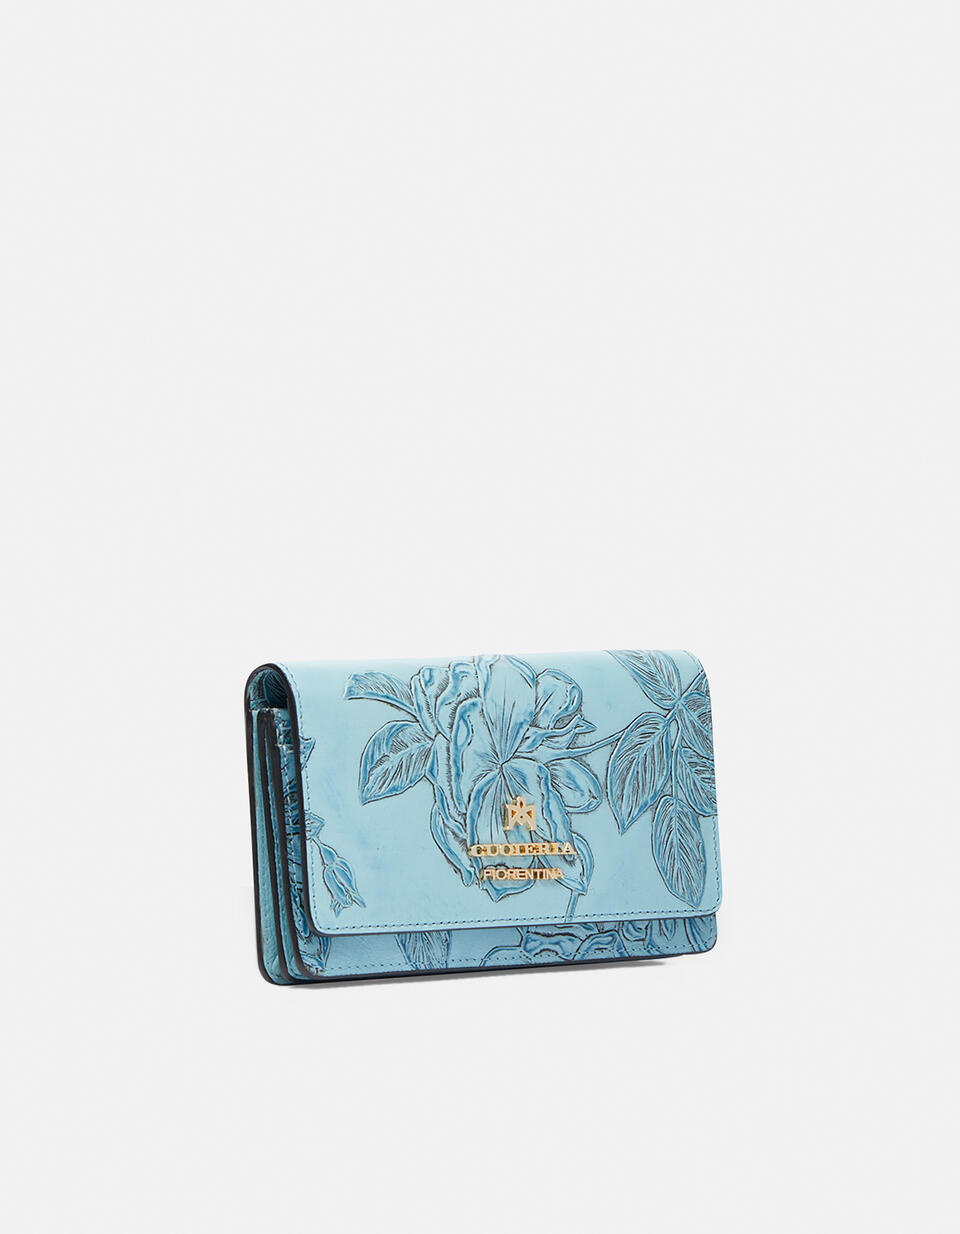 Accordian style wallet CELESTE  - Women's Wallets - Women's Wallets - Wallets - Cuoieria Fiorentina